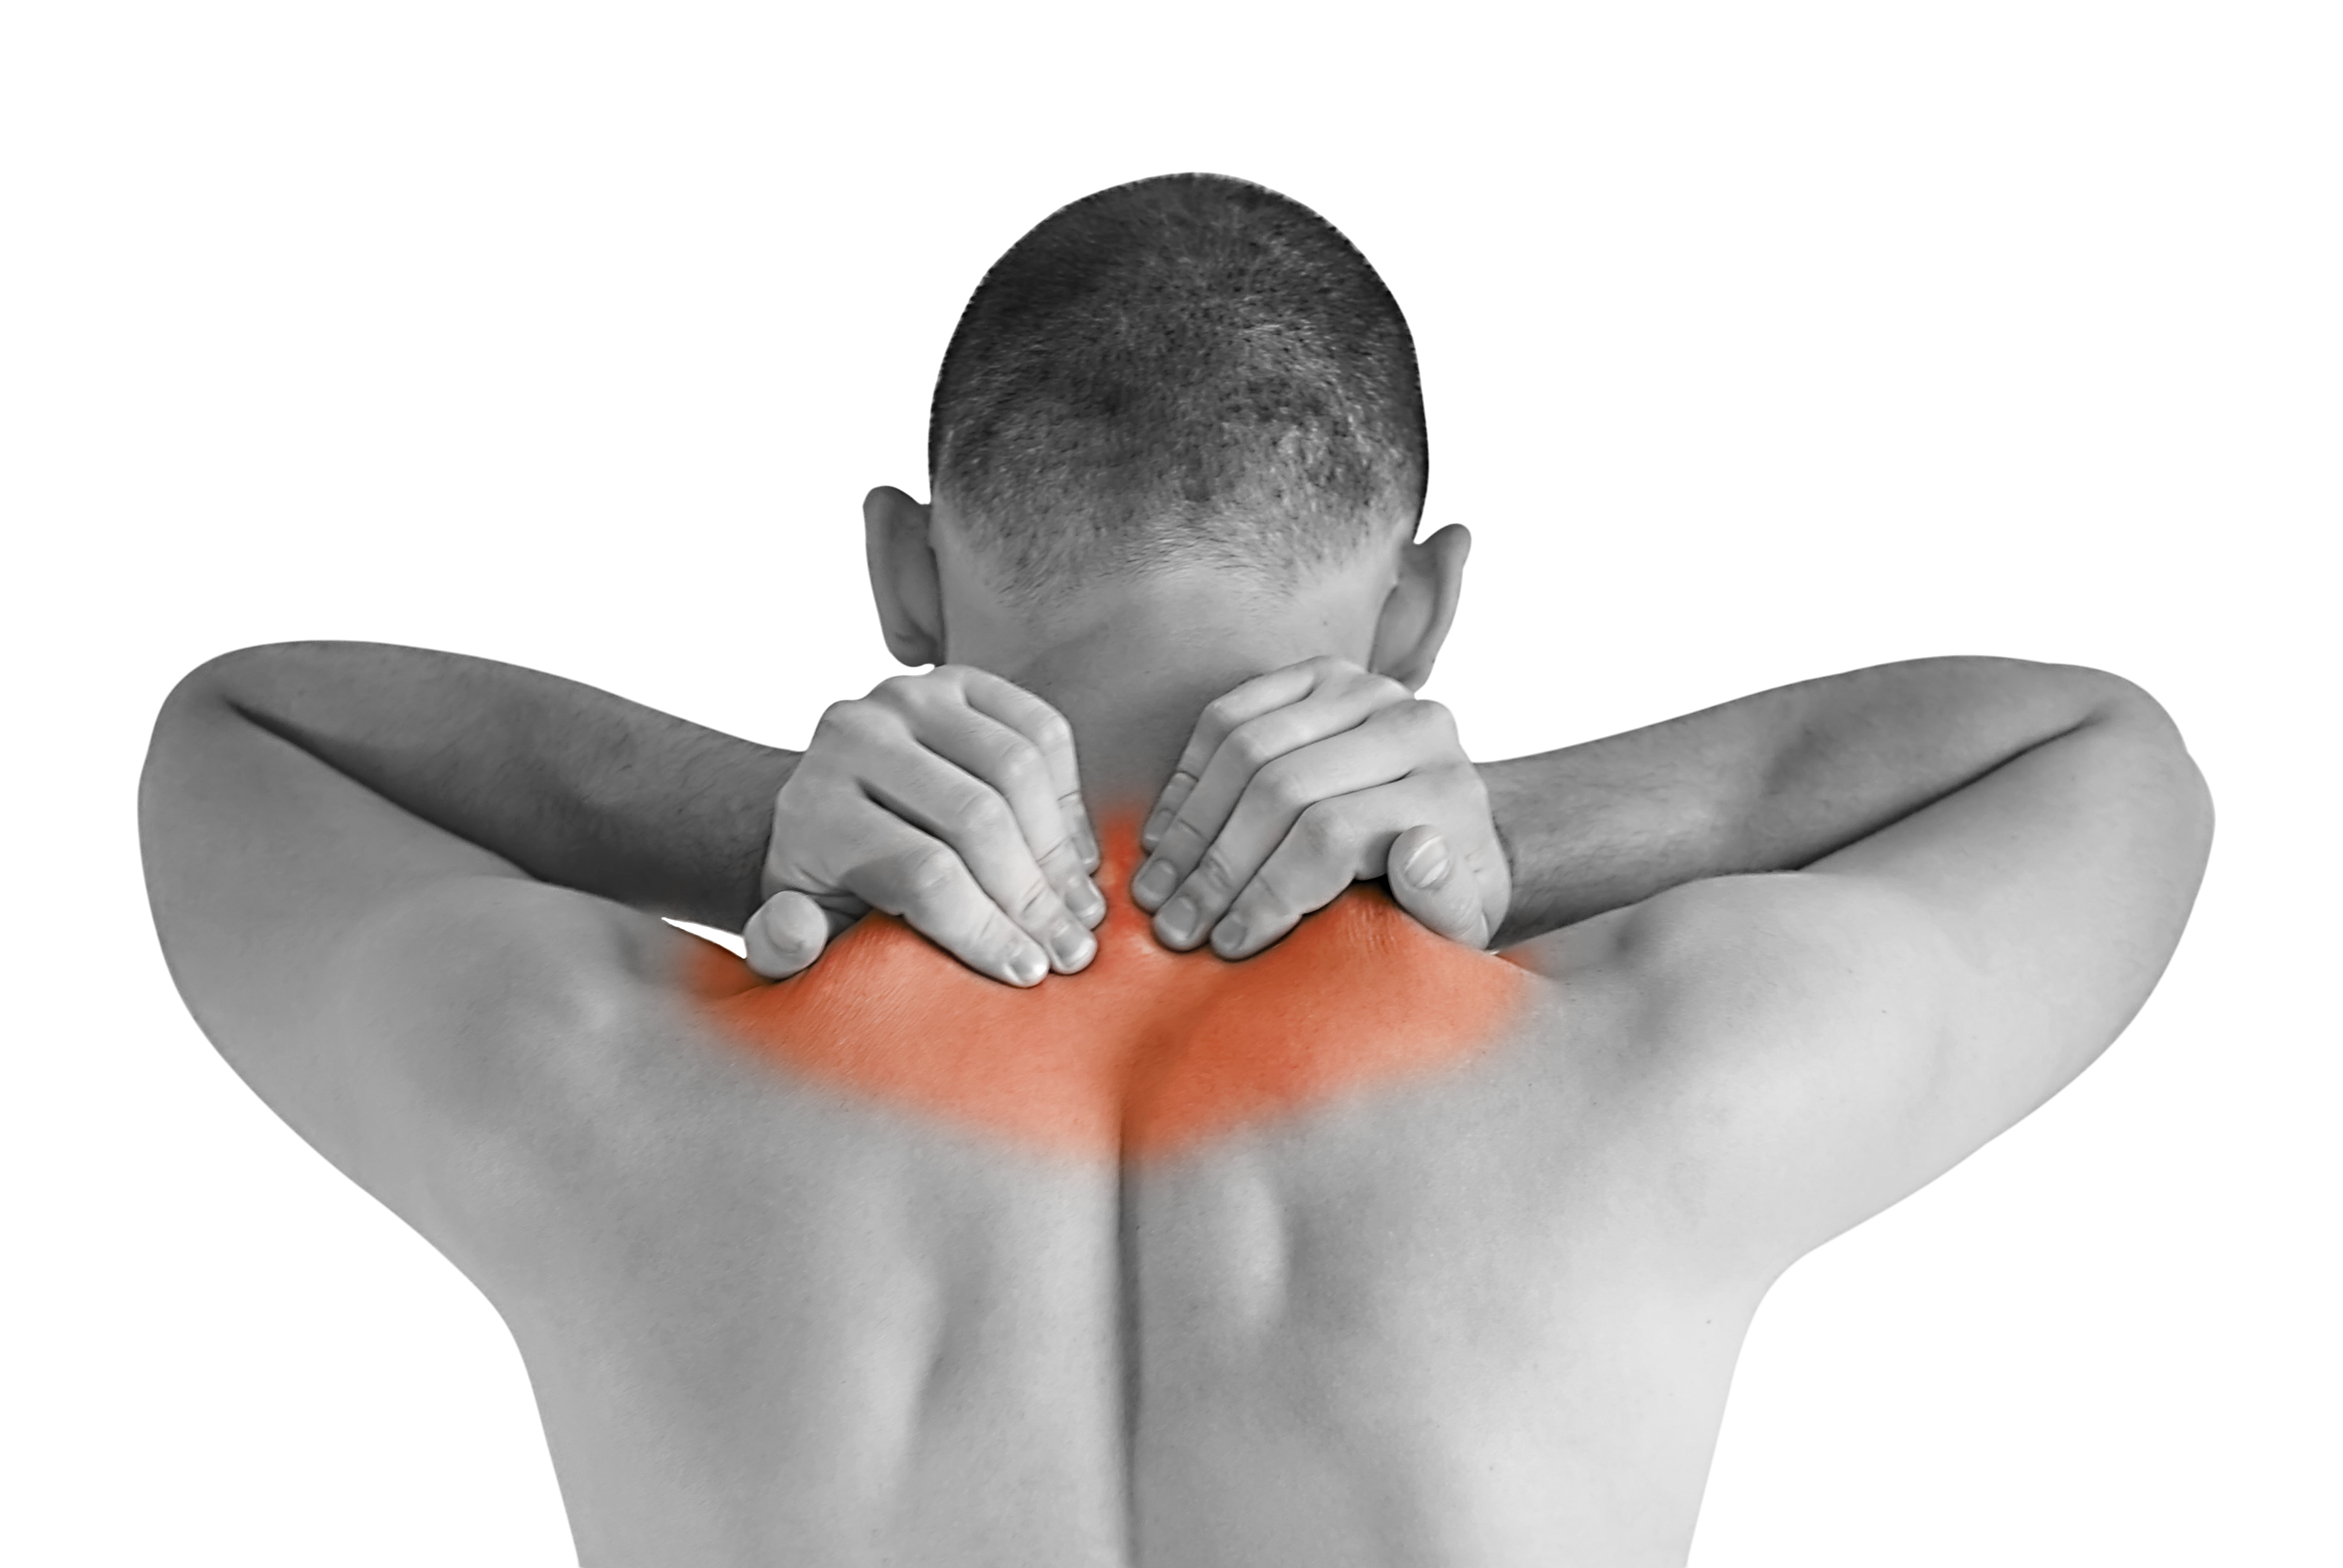 Krónikus nyak- és vállfájdalom: valójában könnyen elkerülhető